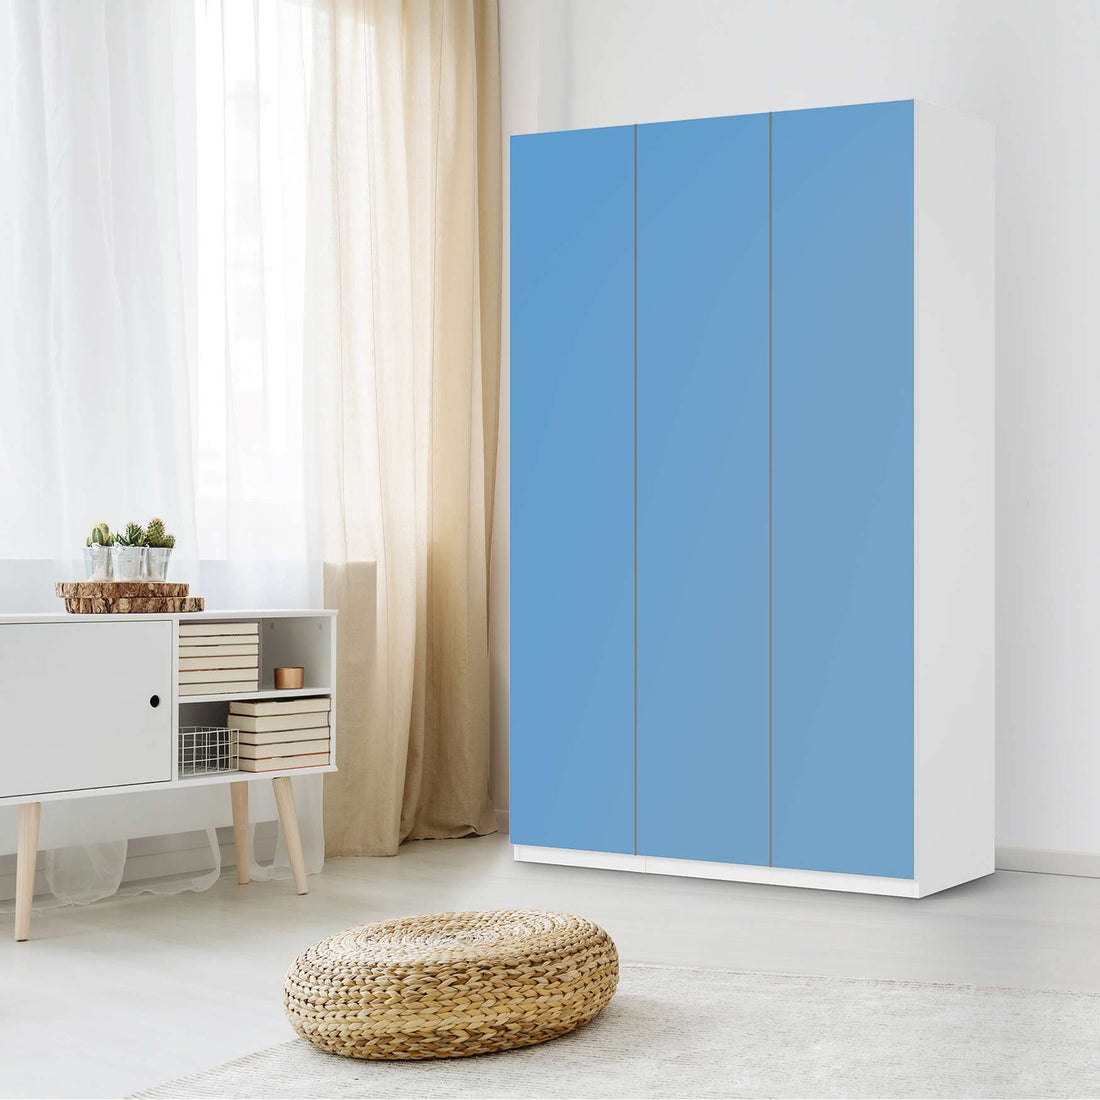 Selbstklebende Folie Blau Light - IKEA Pax Schrank 236 cm Höhe - 3 Türen - Schlafzimmer